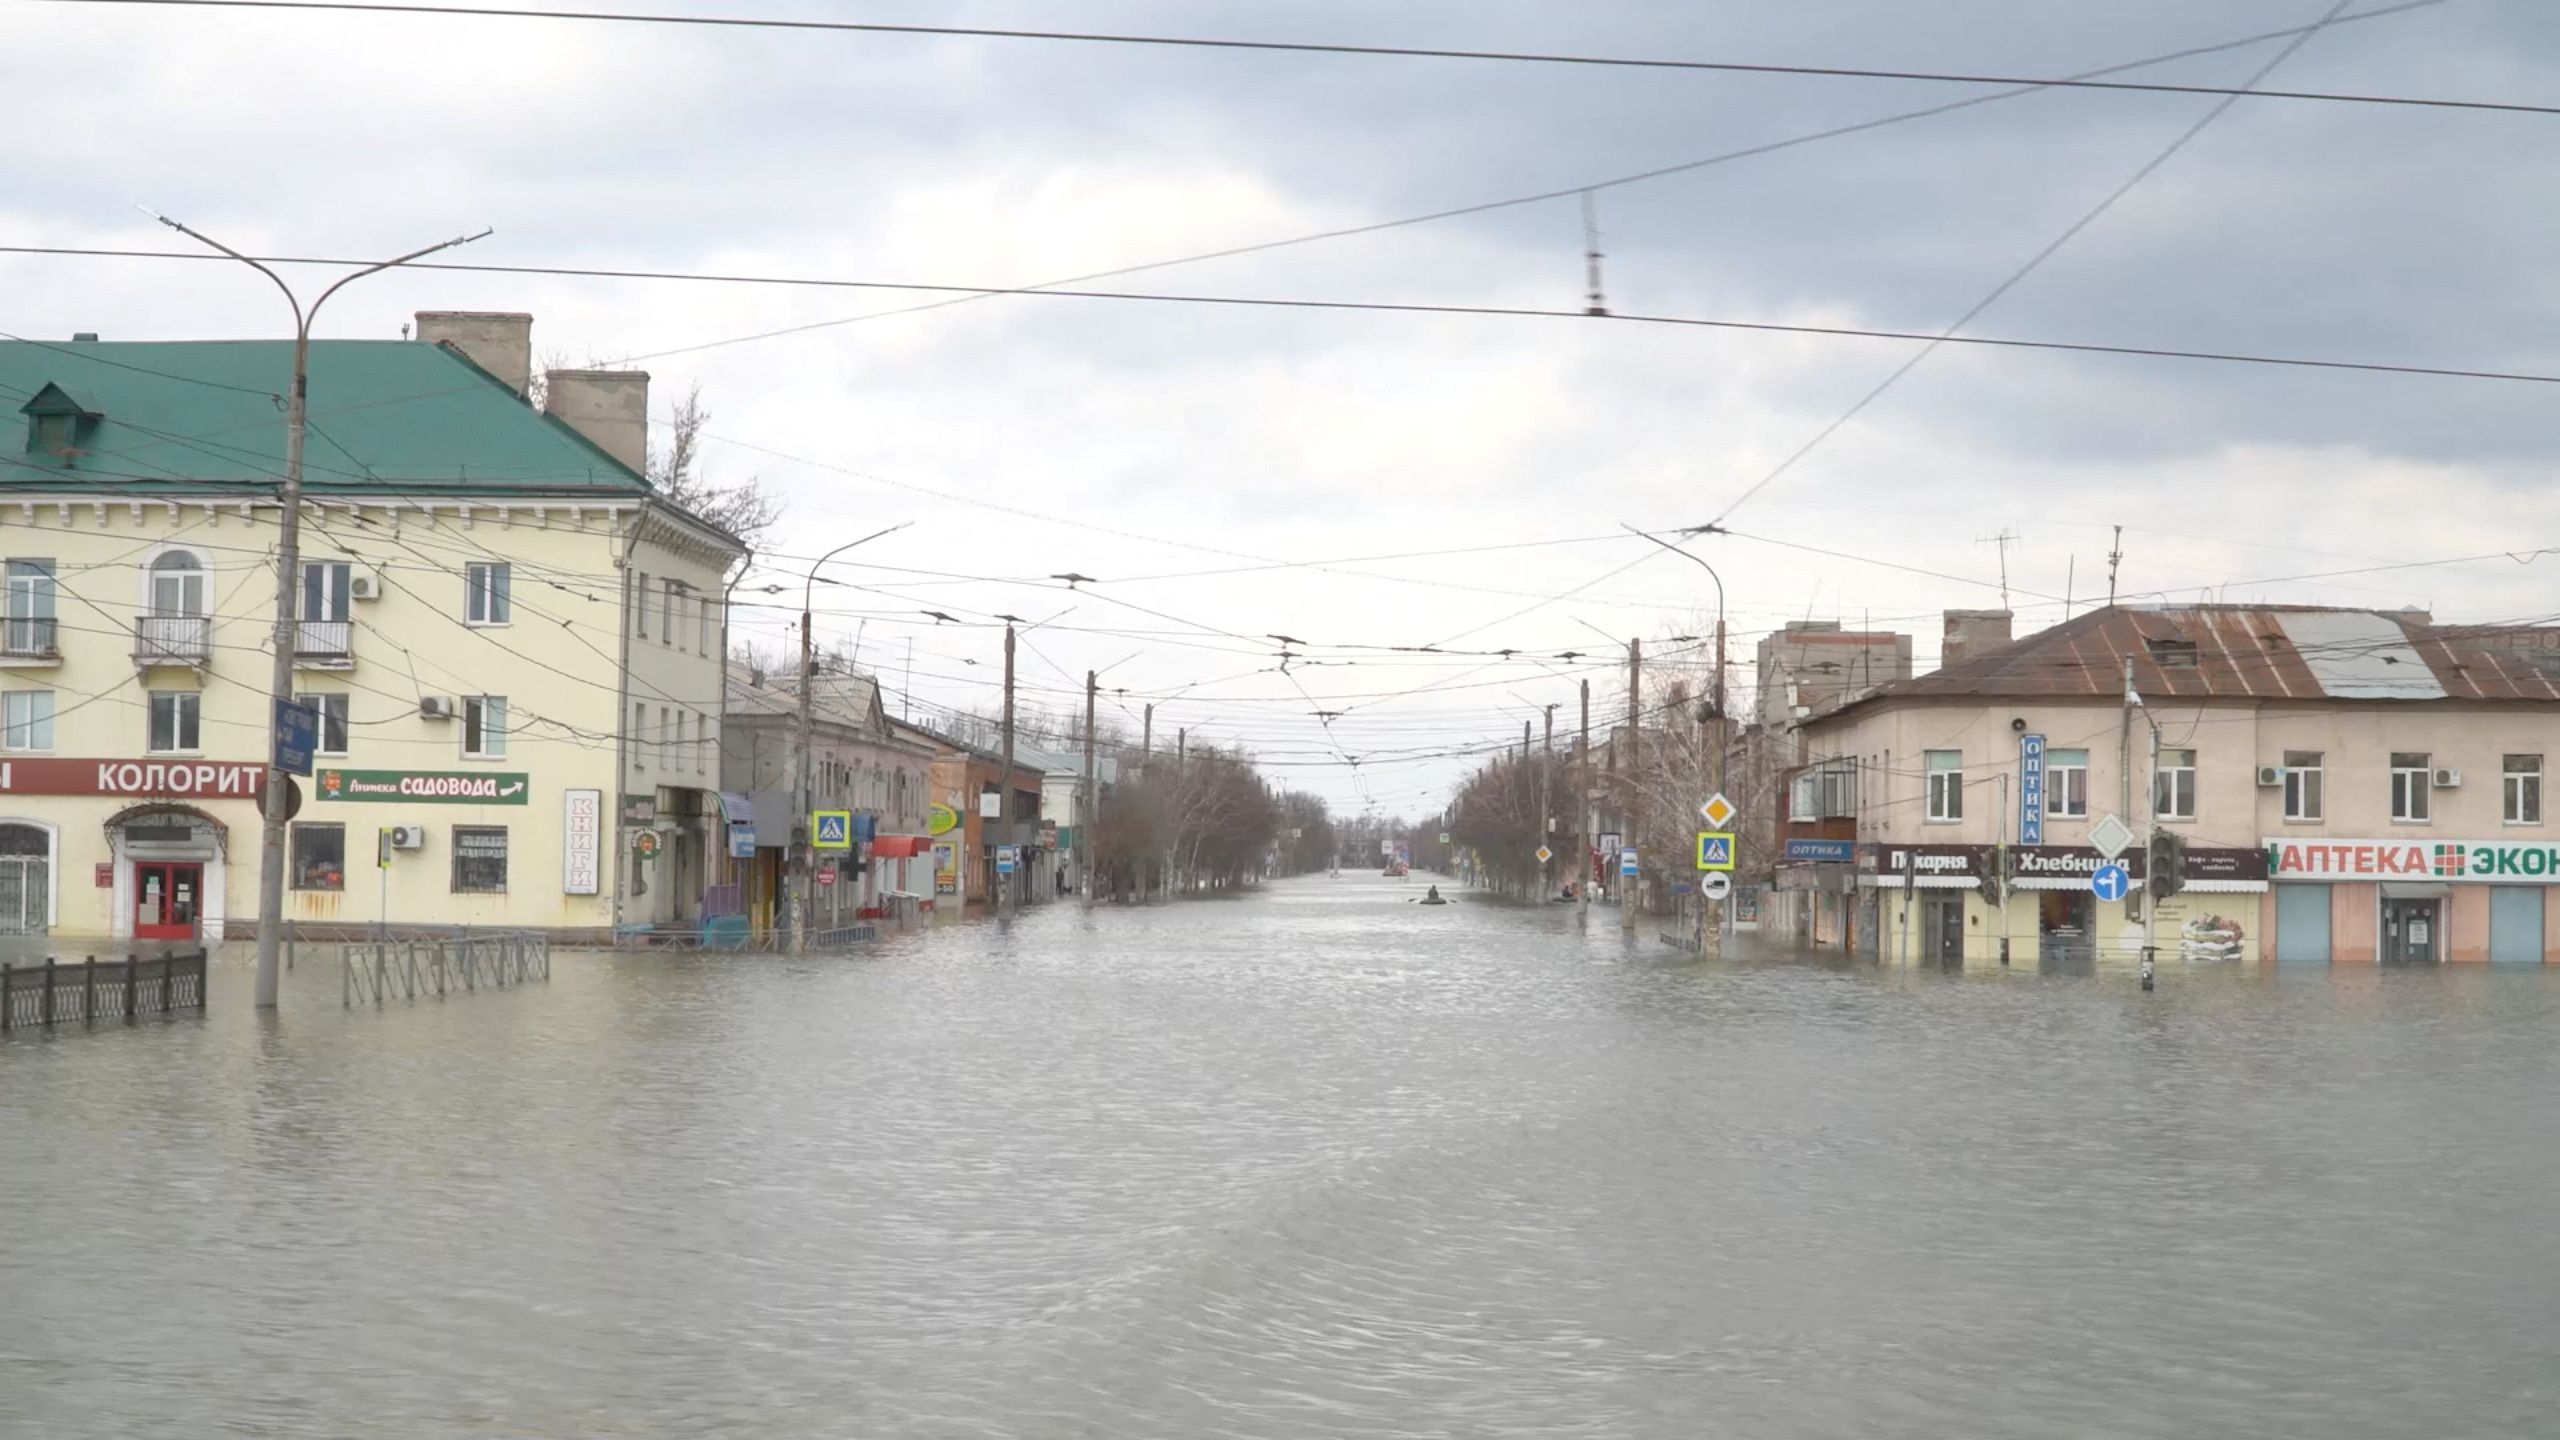 Die Straßen der Stadt Orsk sind überflutet.